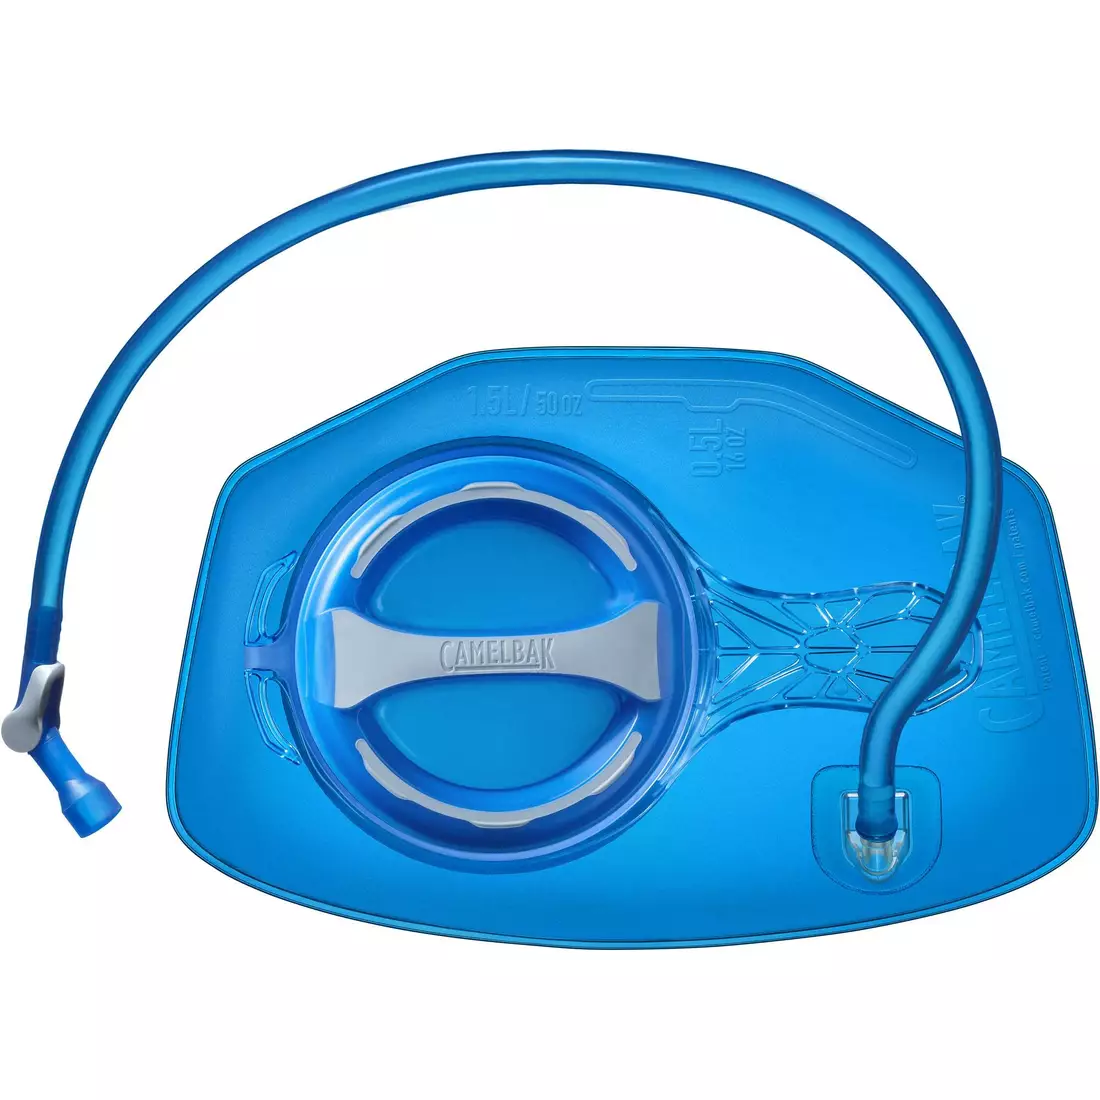 Camelbak SS18 Hüfttasche mit Wasserblase Vantage LR 50 oz / 1,5 l Anthrazit/Griechisch Blau 1486001000